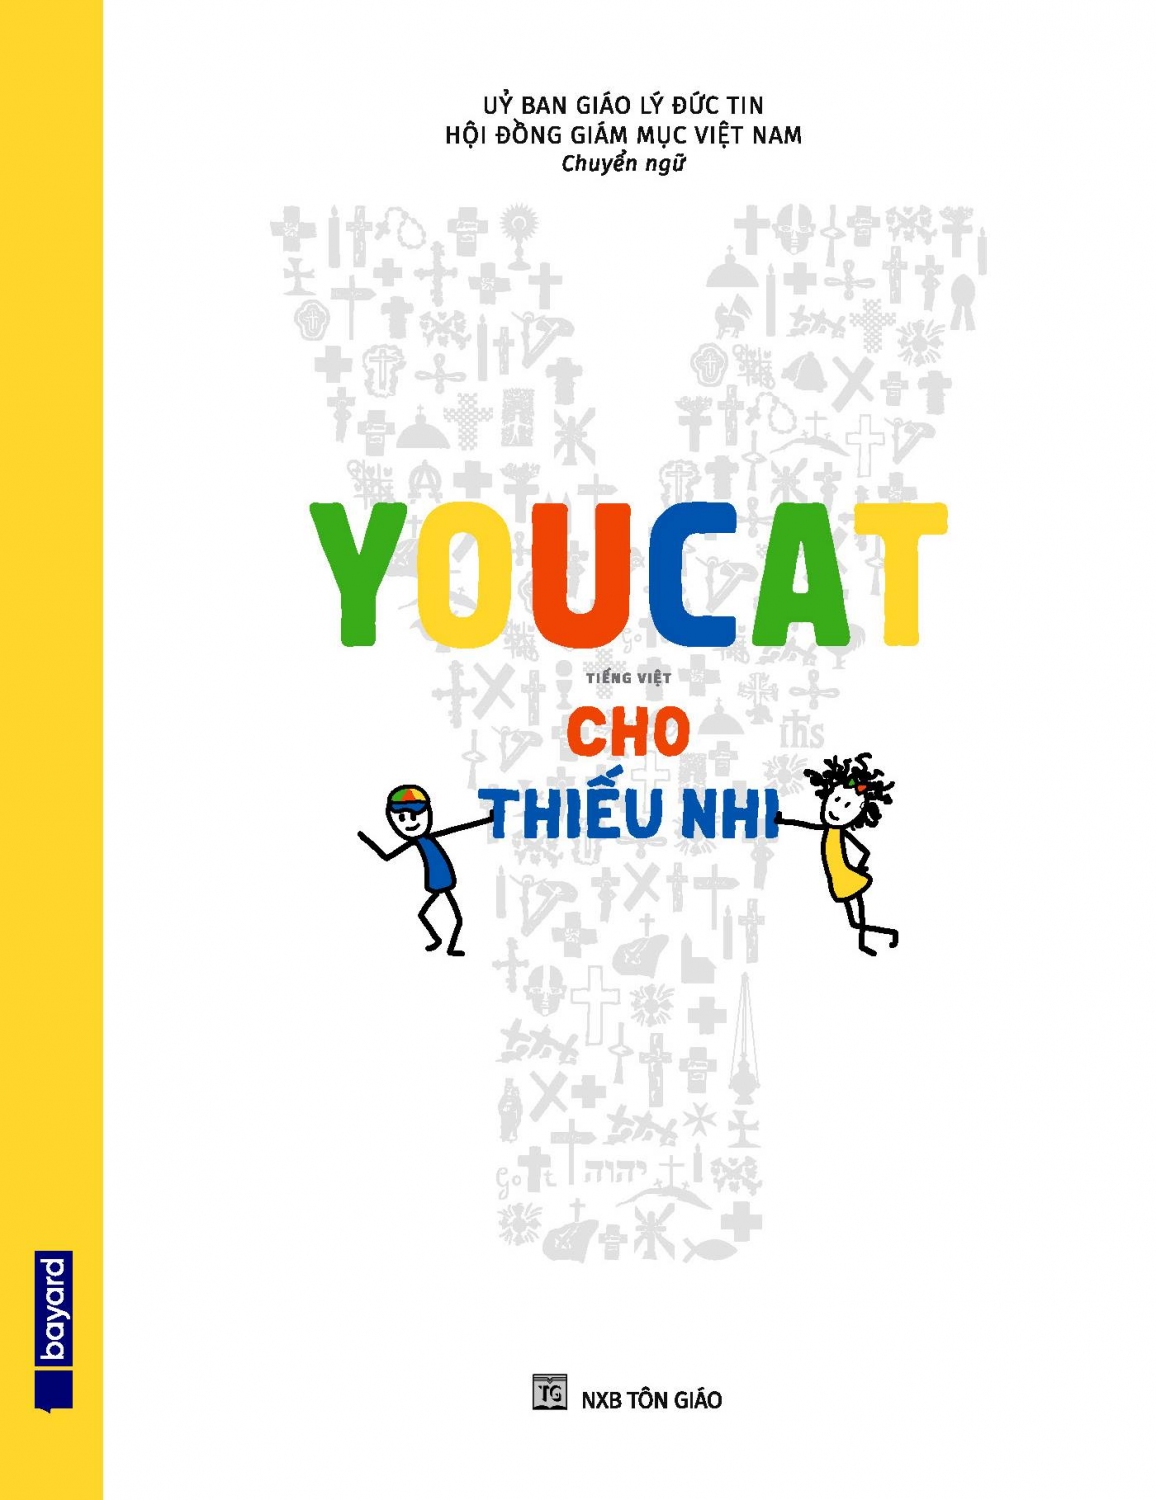 Youcat – bản Tiếng Việt dành cho Thiếu nhi